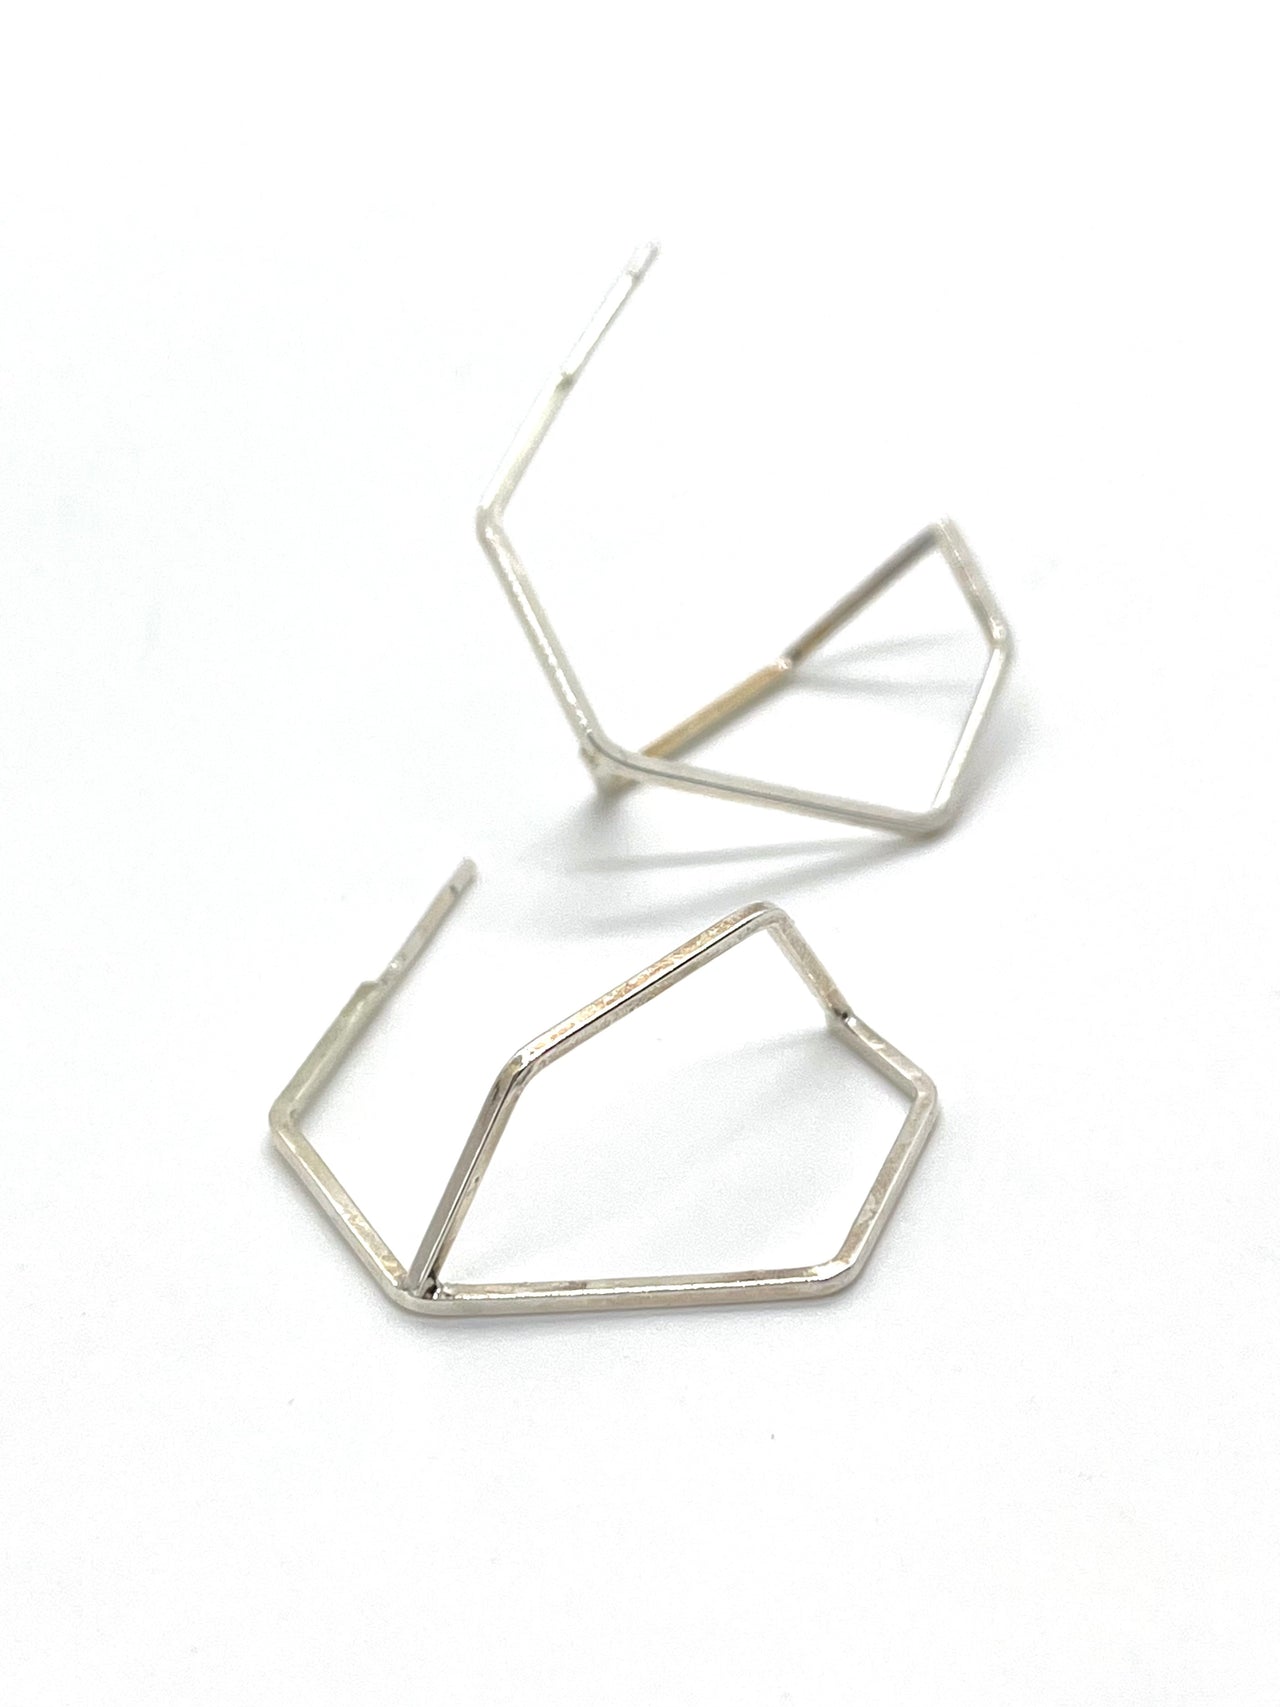 Asymmetric Geometric Silver Stud Earrings